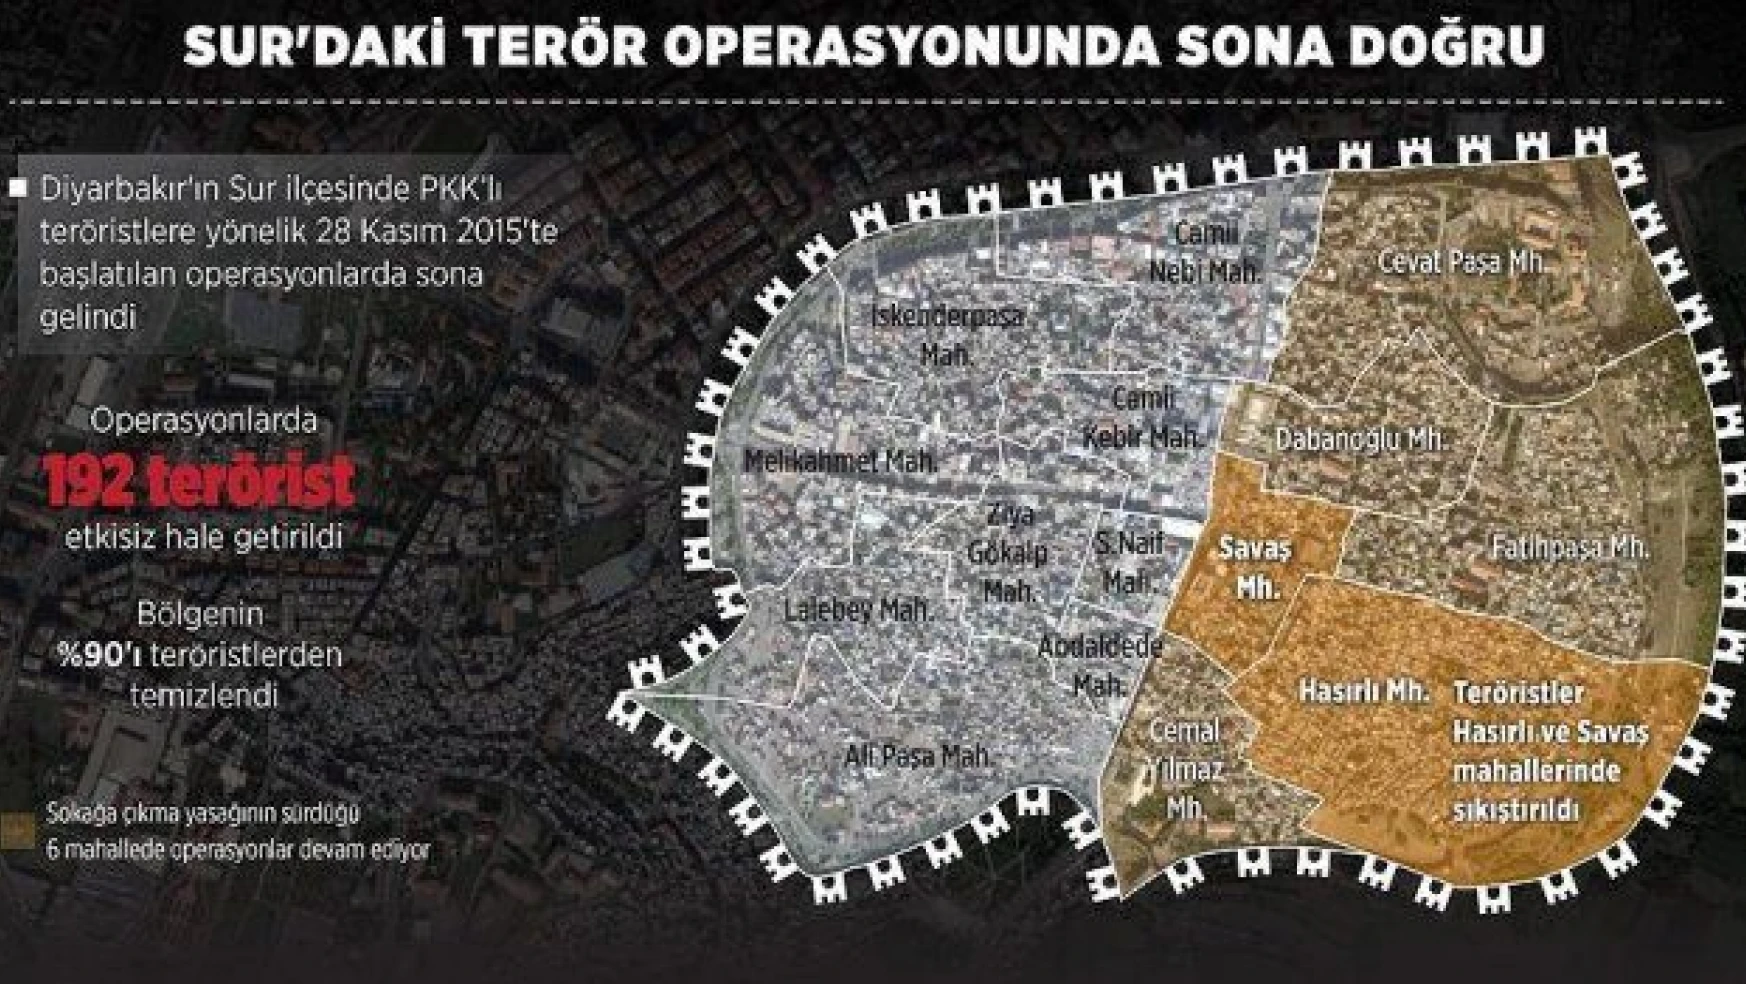 Diyarbakır Sur'da teröristler için çember iyice daraldı